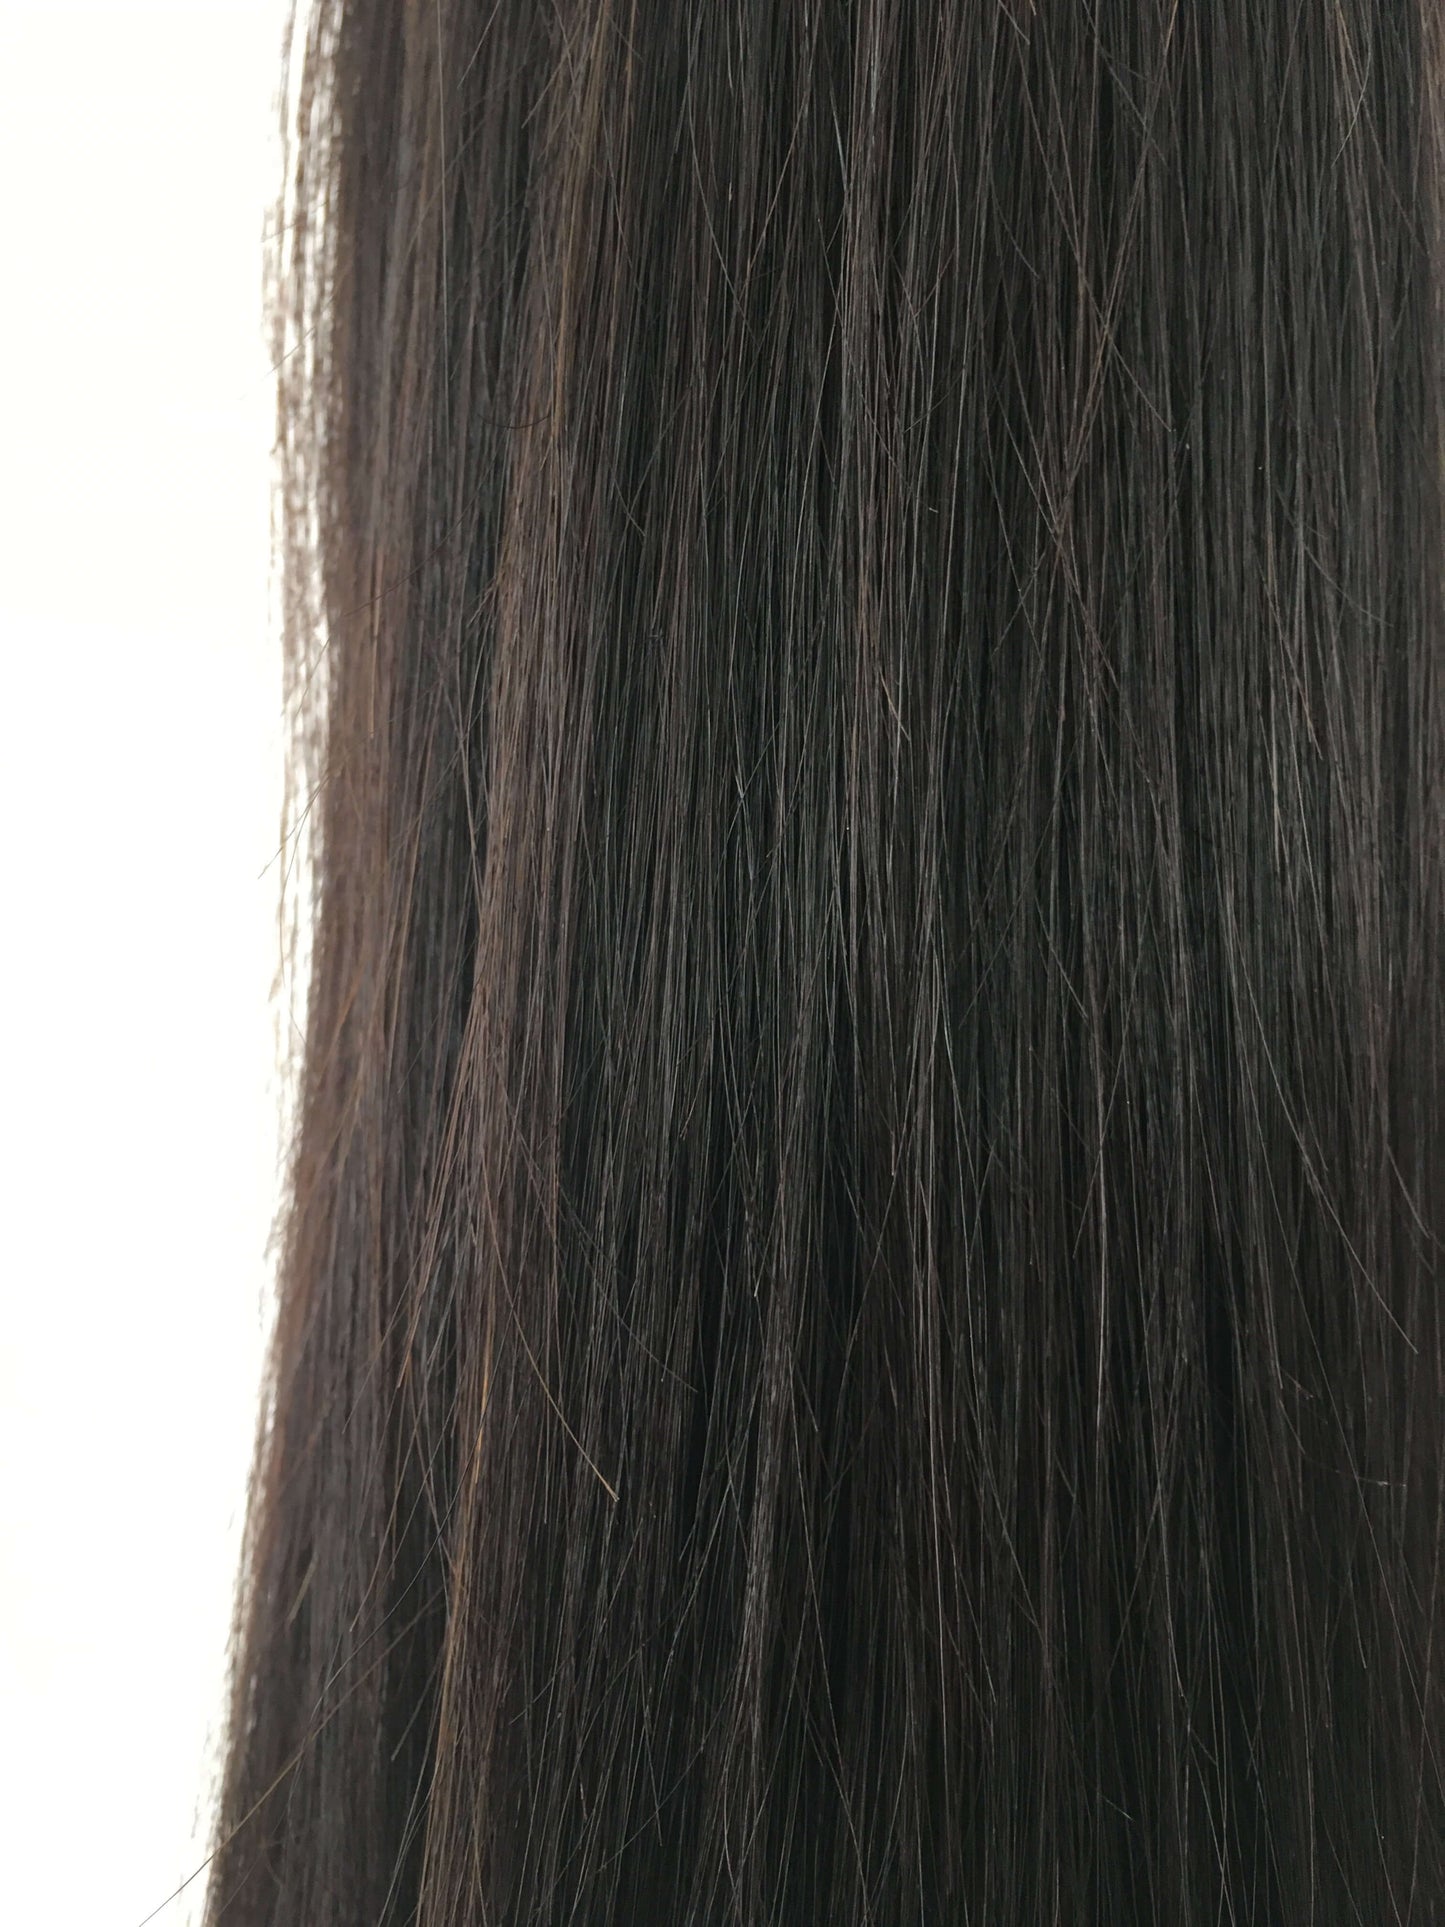 שיער אנושי בתולה ברזילאי - ערבים, 24'', ישר, בתולה, 100 גרם - משלוח מהיר